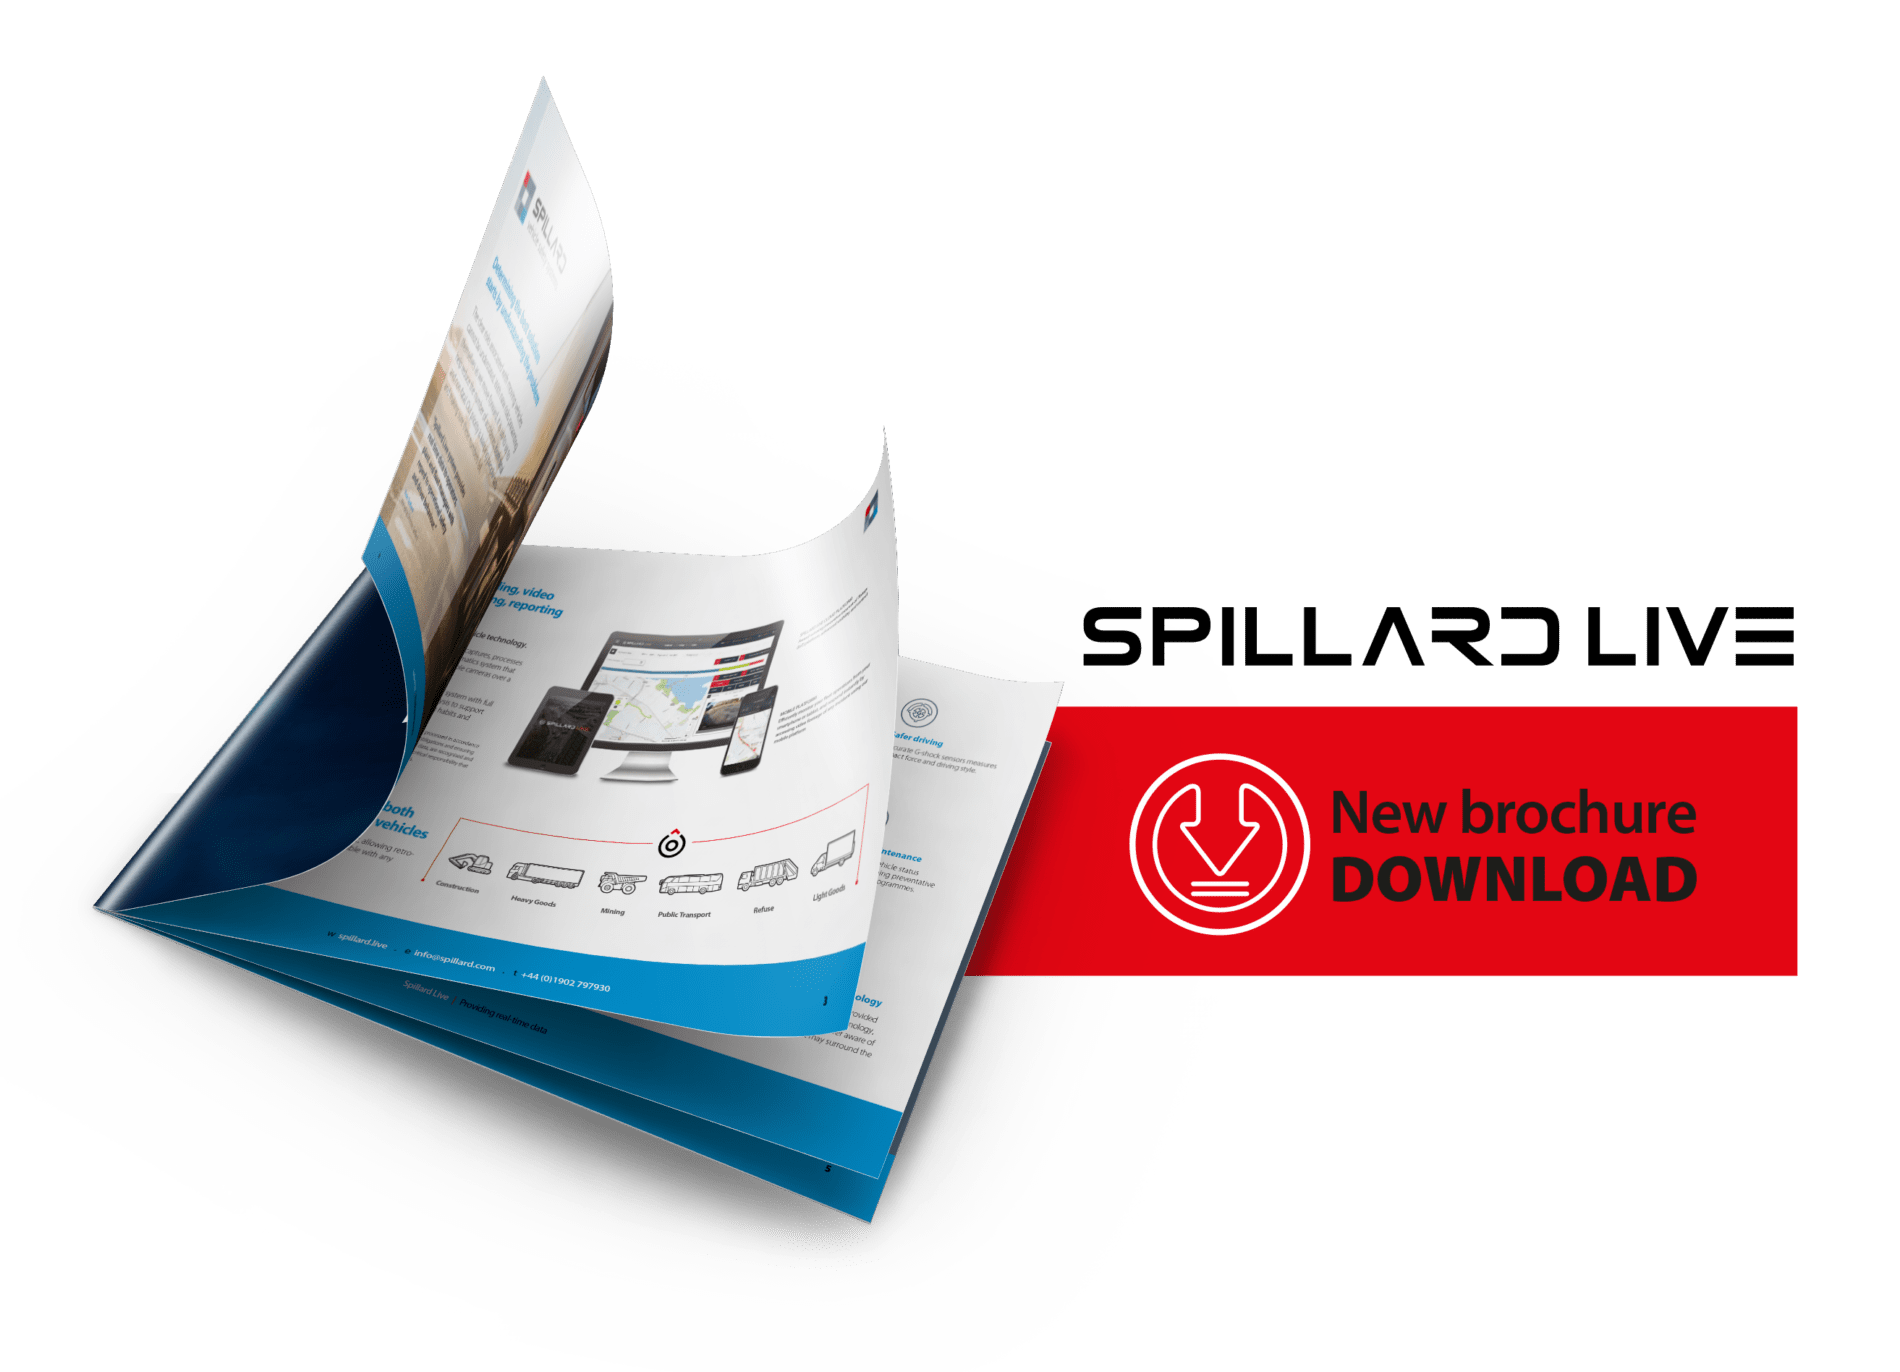 Light Goods - A4 Spillard LIVE brochure visual